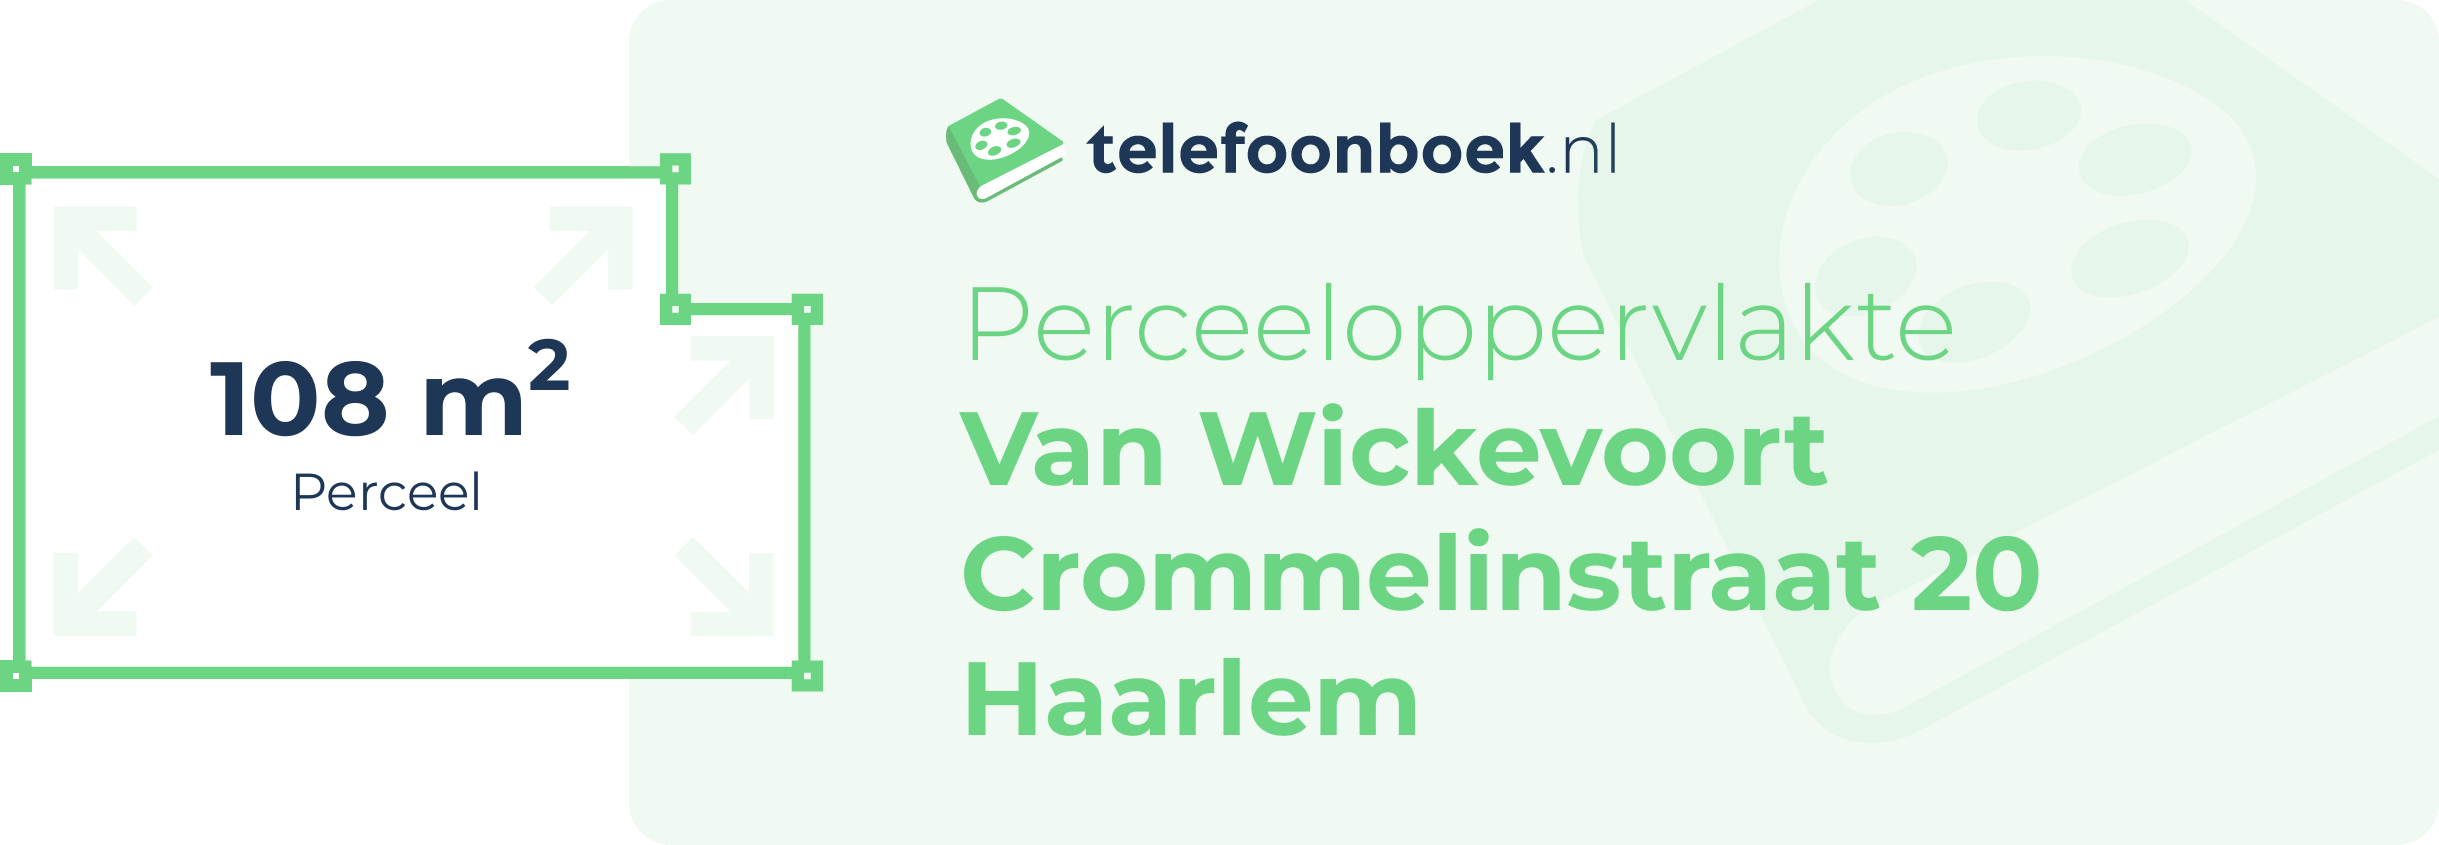 Perceeloppervlakte Van Wickevoort Crommelinstraat 20 Haarlem